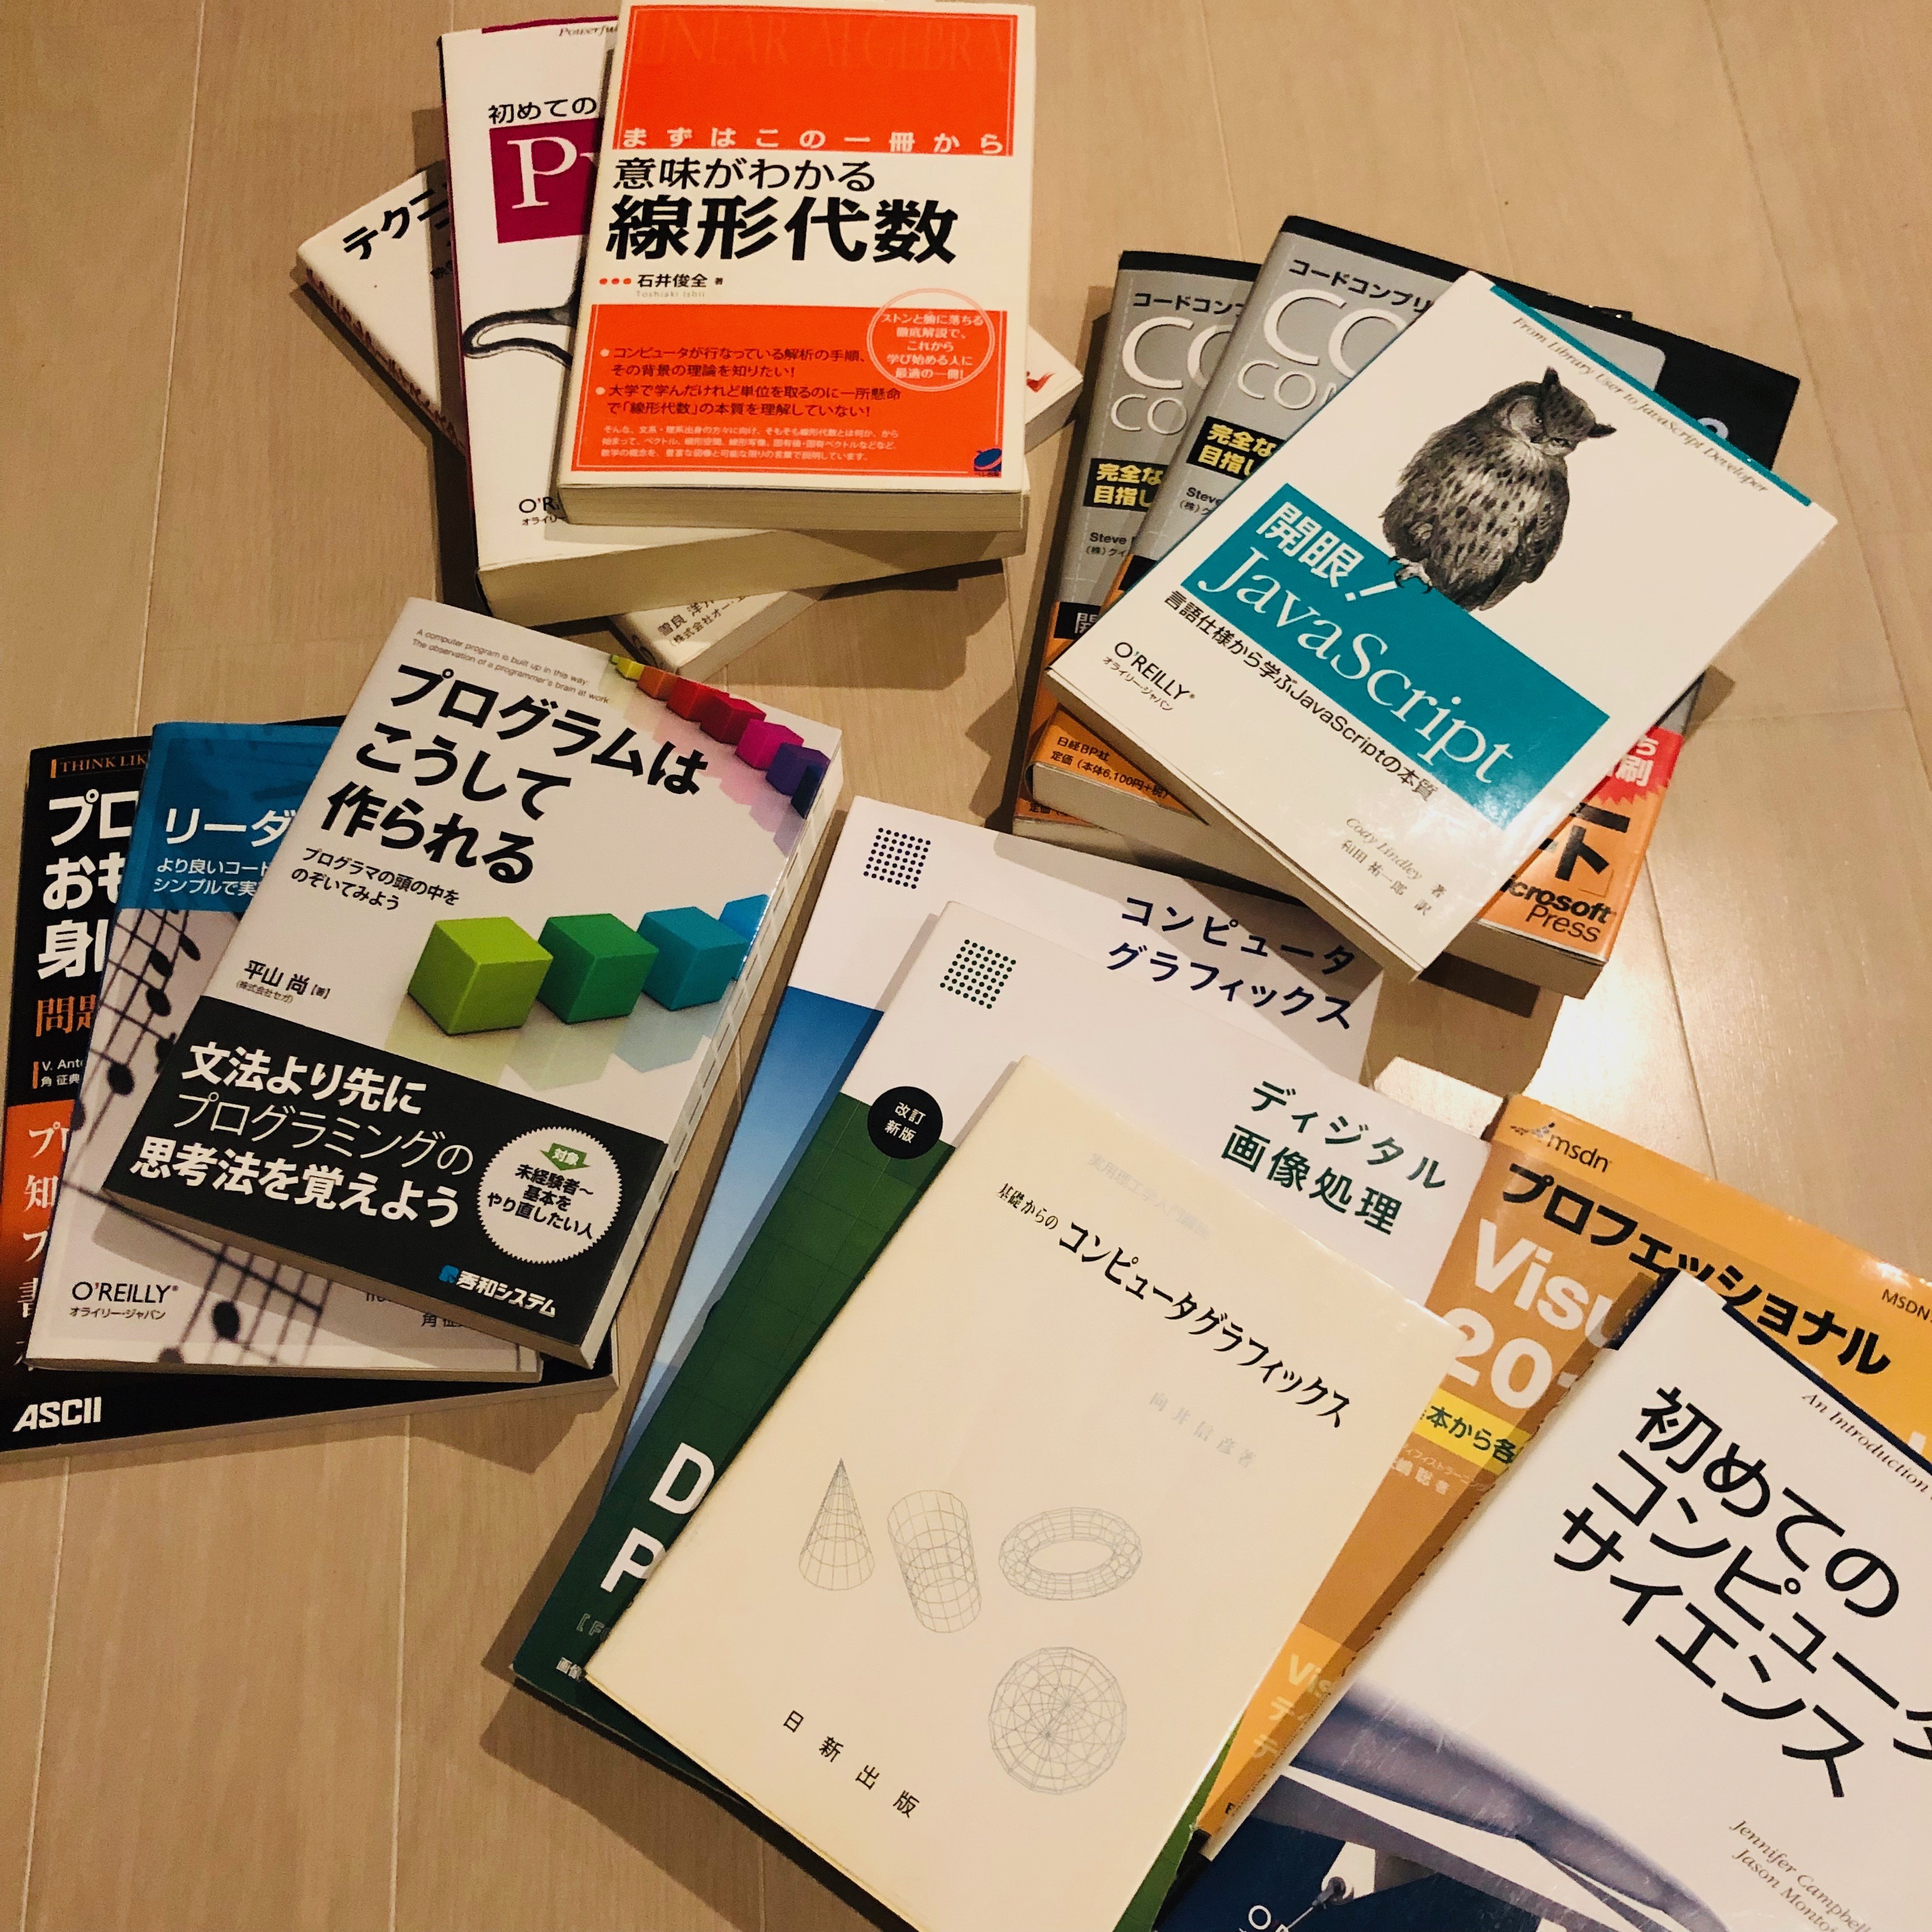 35歳からTAになるために読んだ14冊 | Taguma CG Lab